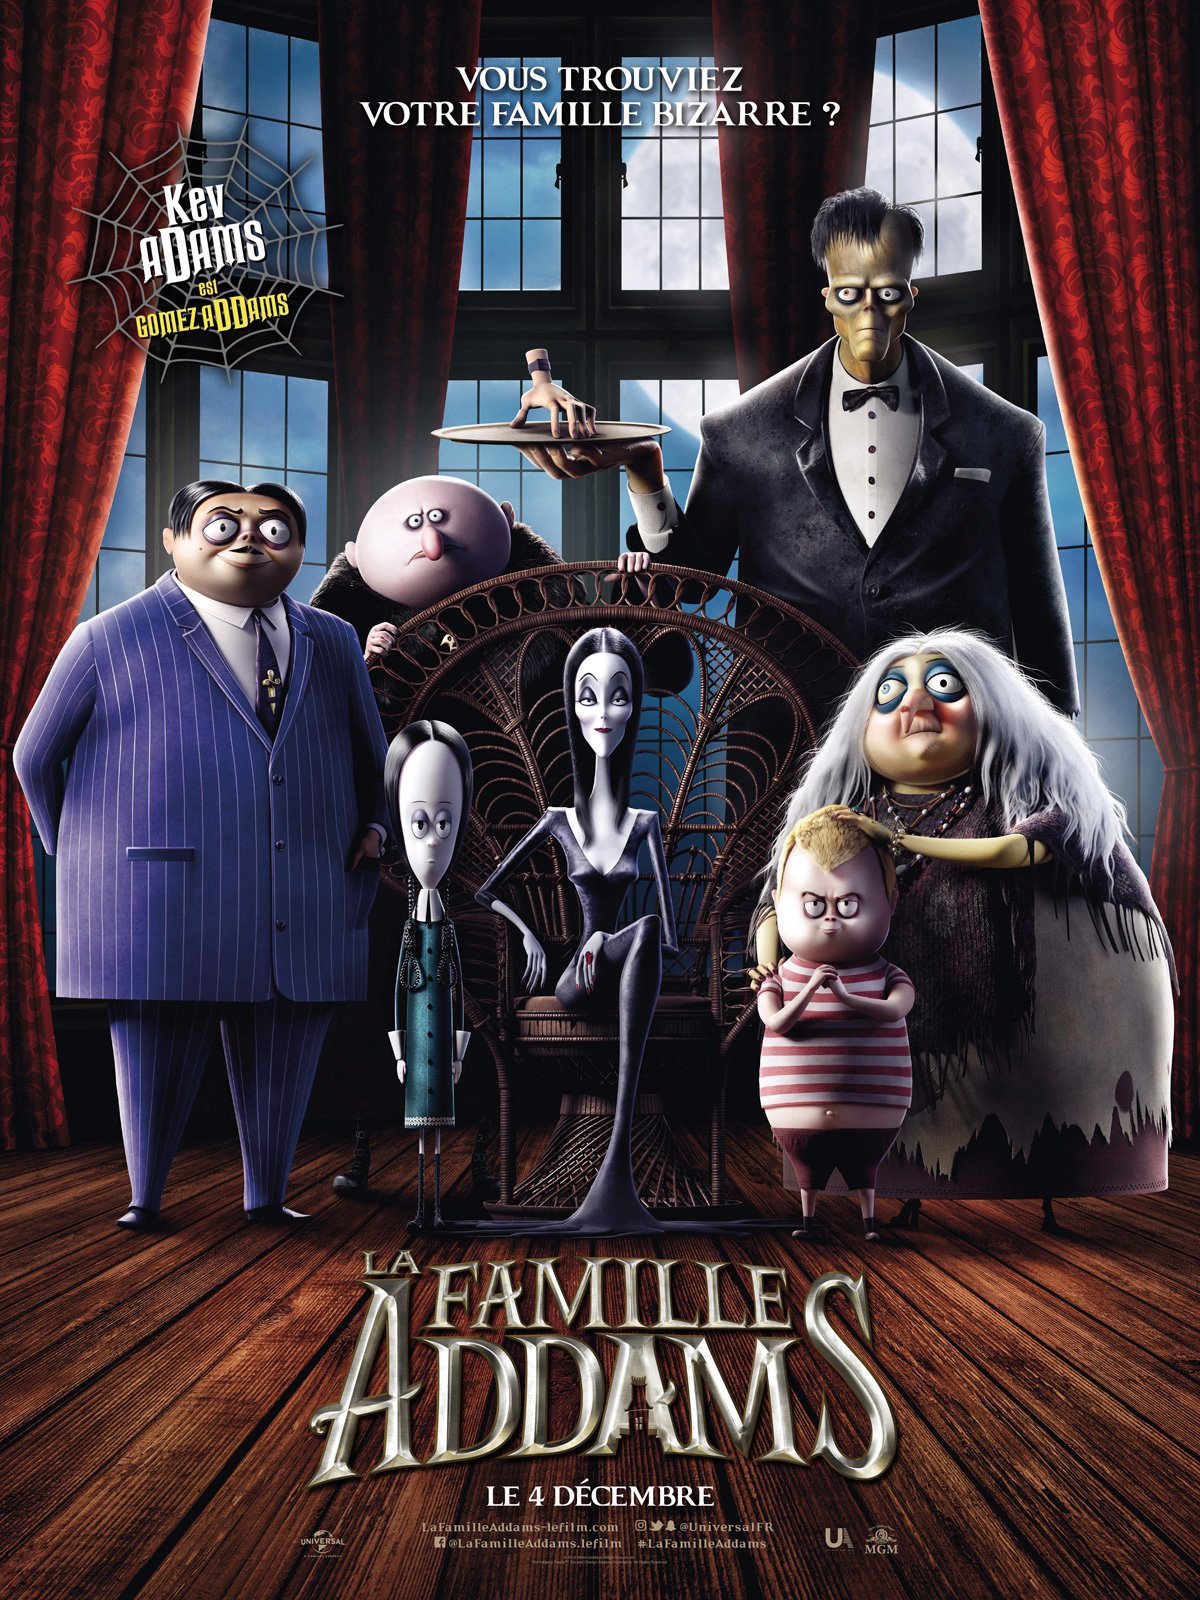 VIDEO. La famille Addams revient avec la série Wednesday